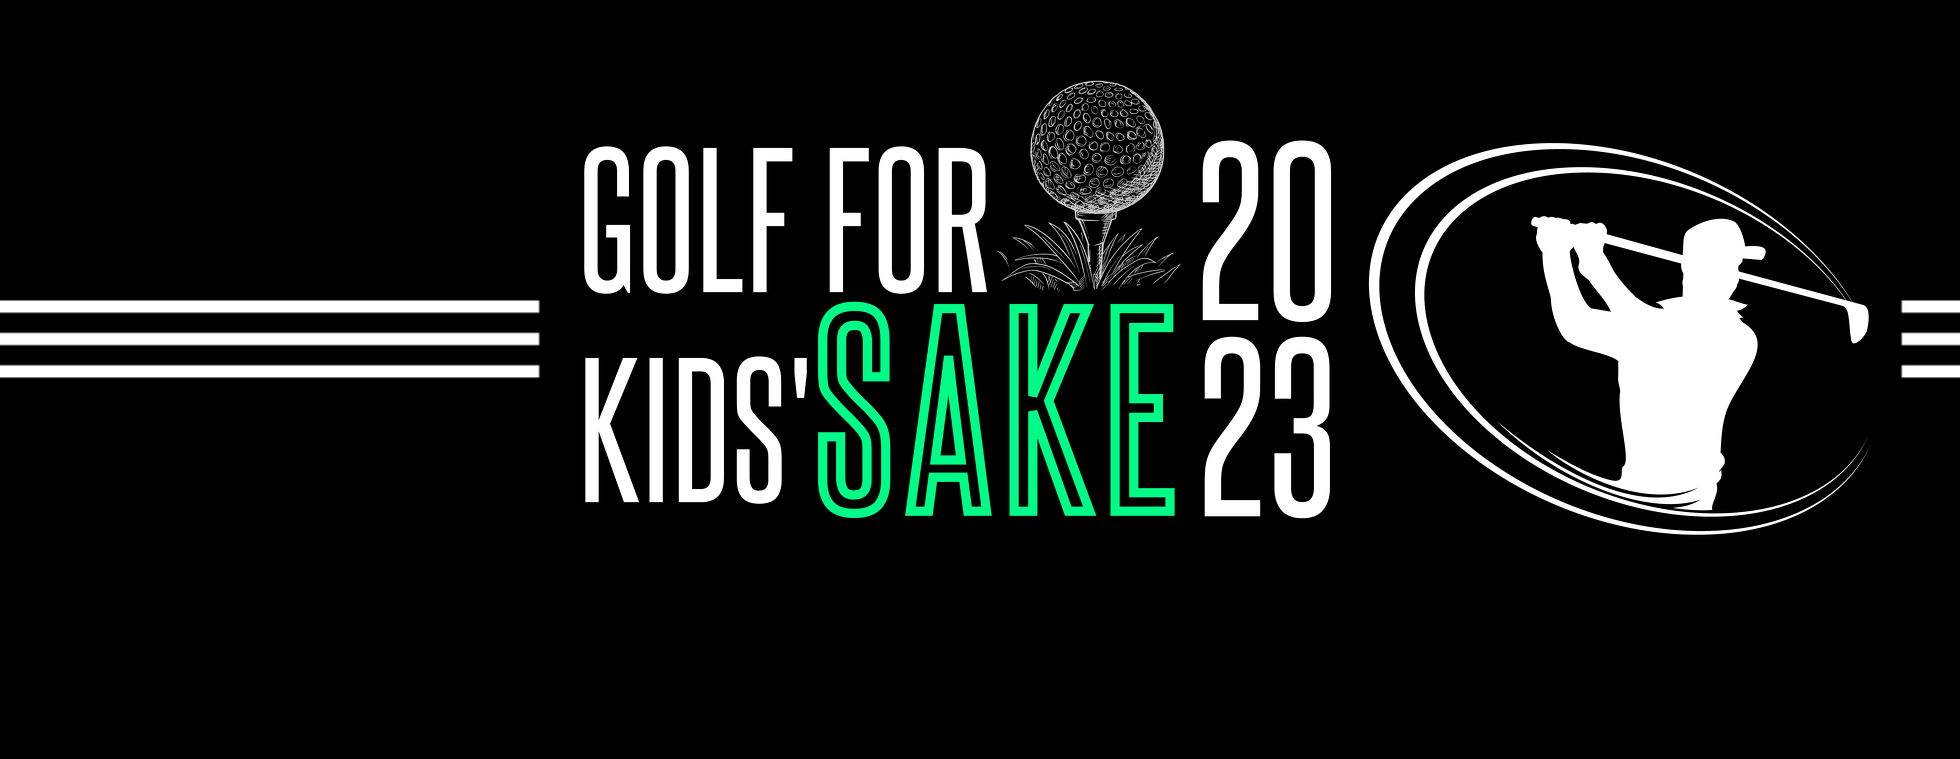 Golf for Kids' Sake